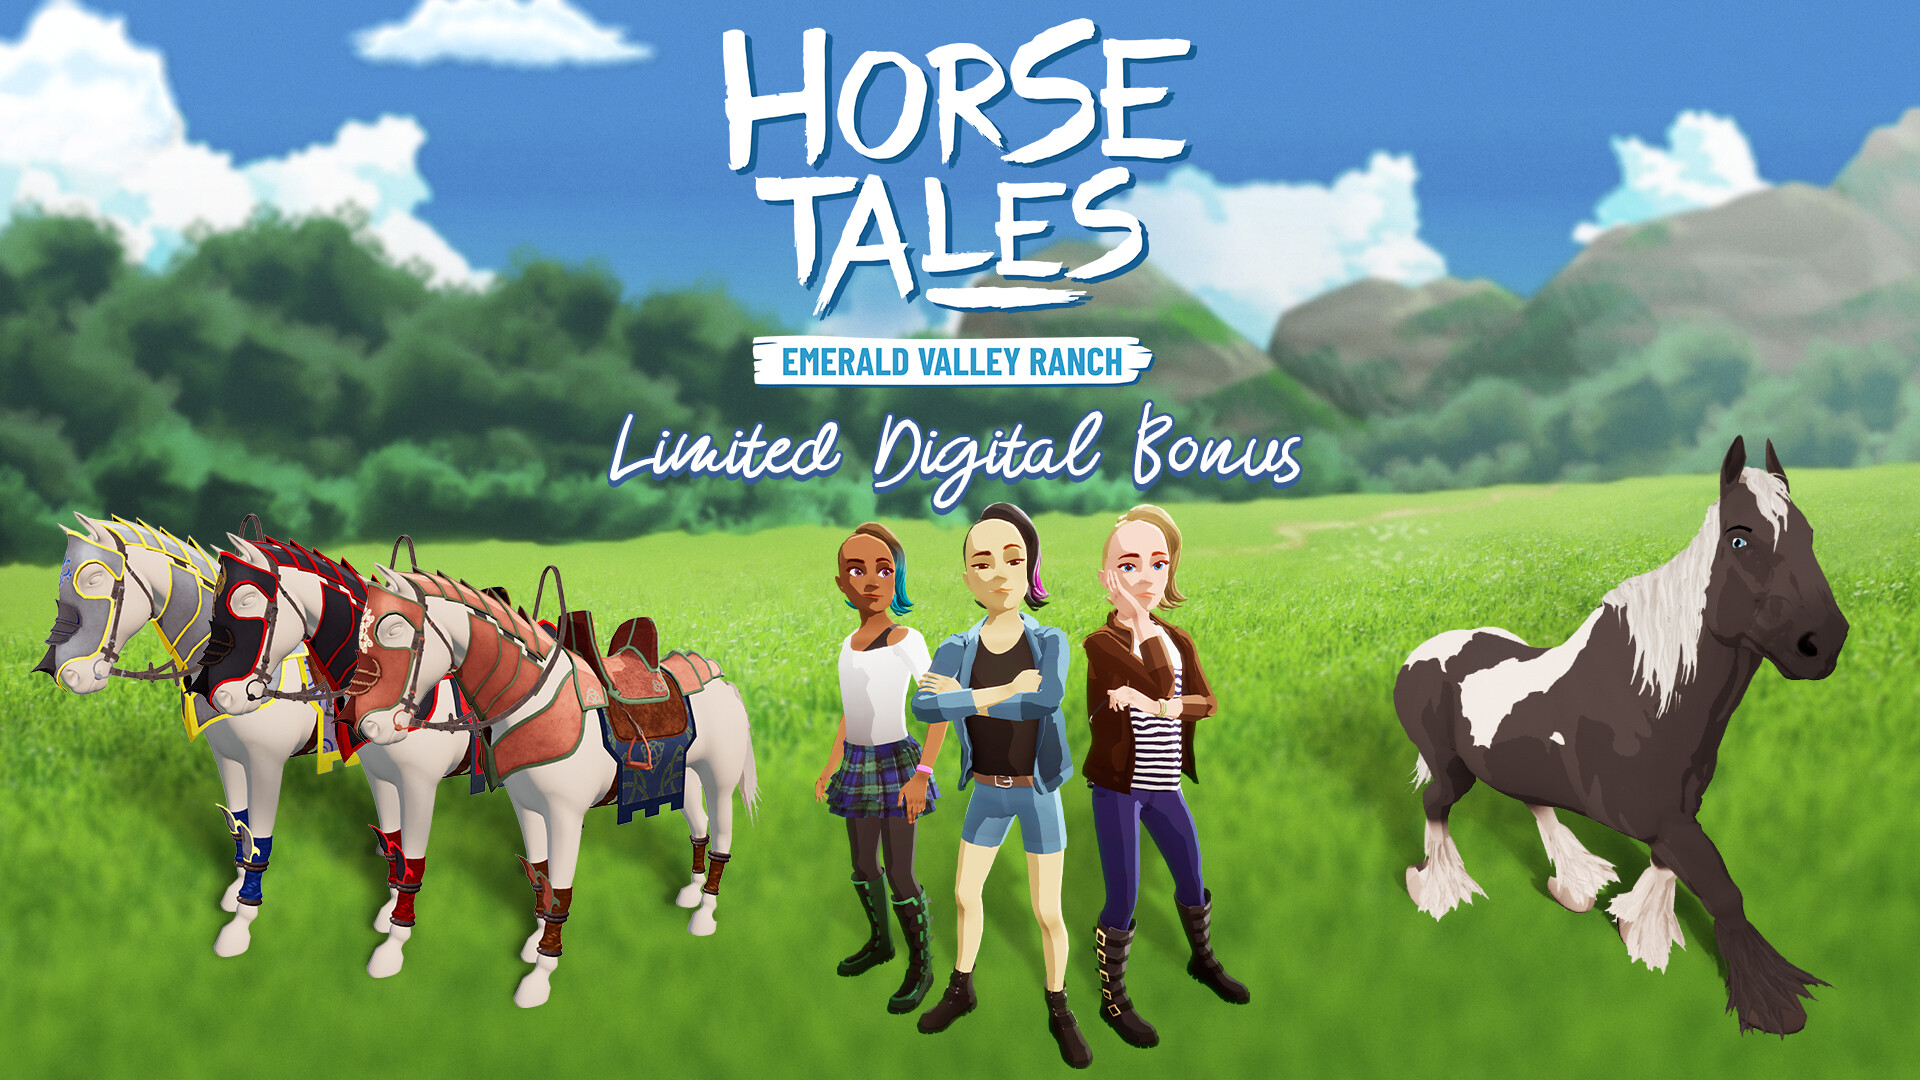 [$ 3.38] Horse Tales: Emerald Valley Ranch - Limited Digital Bonus DLC EU PS4 CD Key